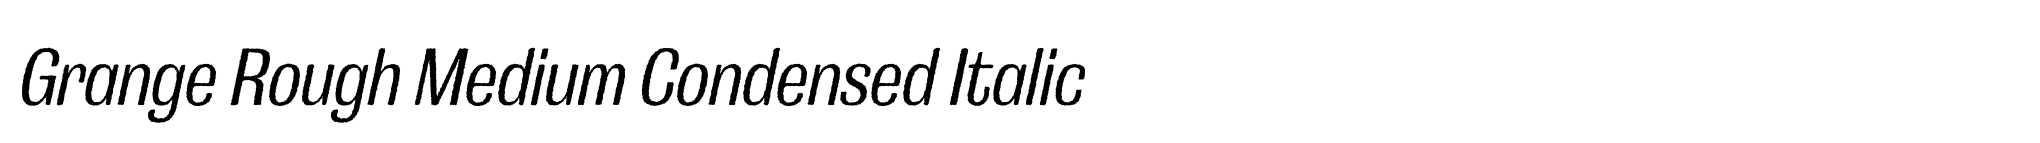 Grange Rough Medium Condensed Italic image